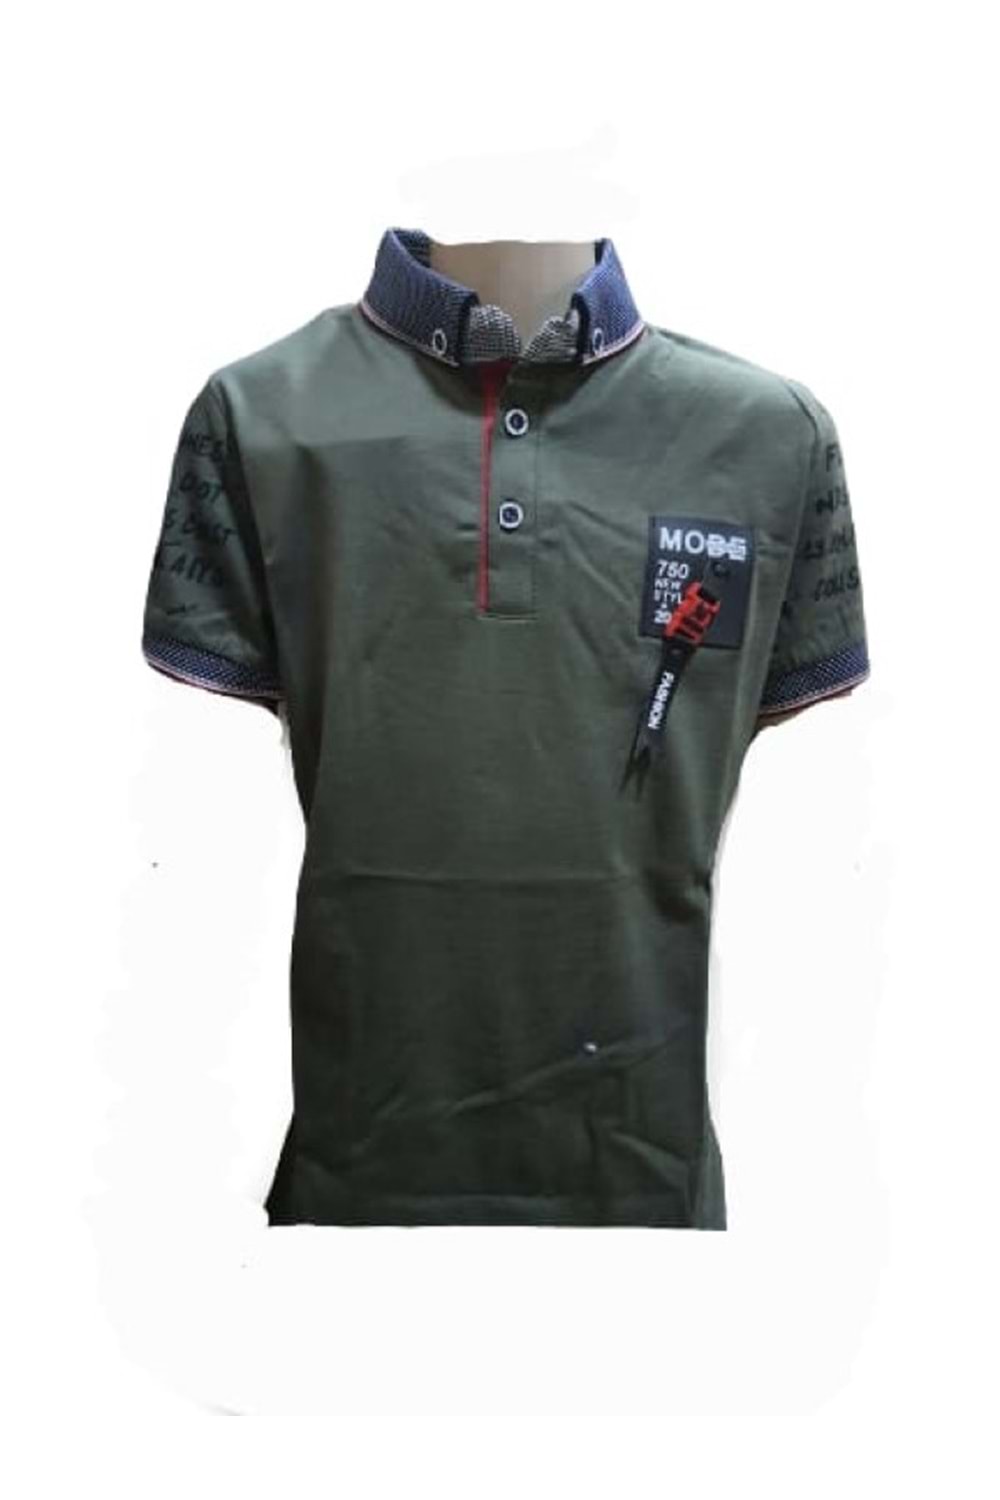 Petitox Çocuk Erkek Polo Yaka Baskılı T-shirt 4023 - Haki - 8 YAŞ